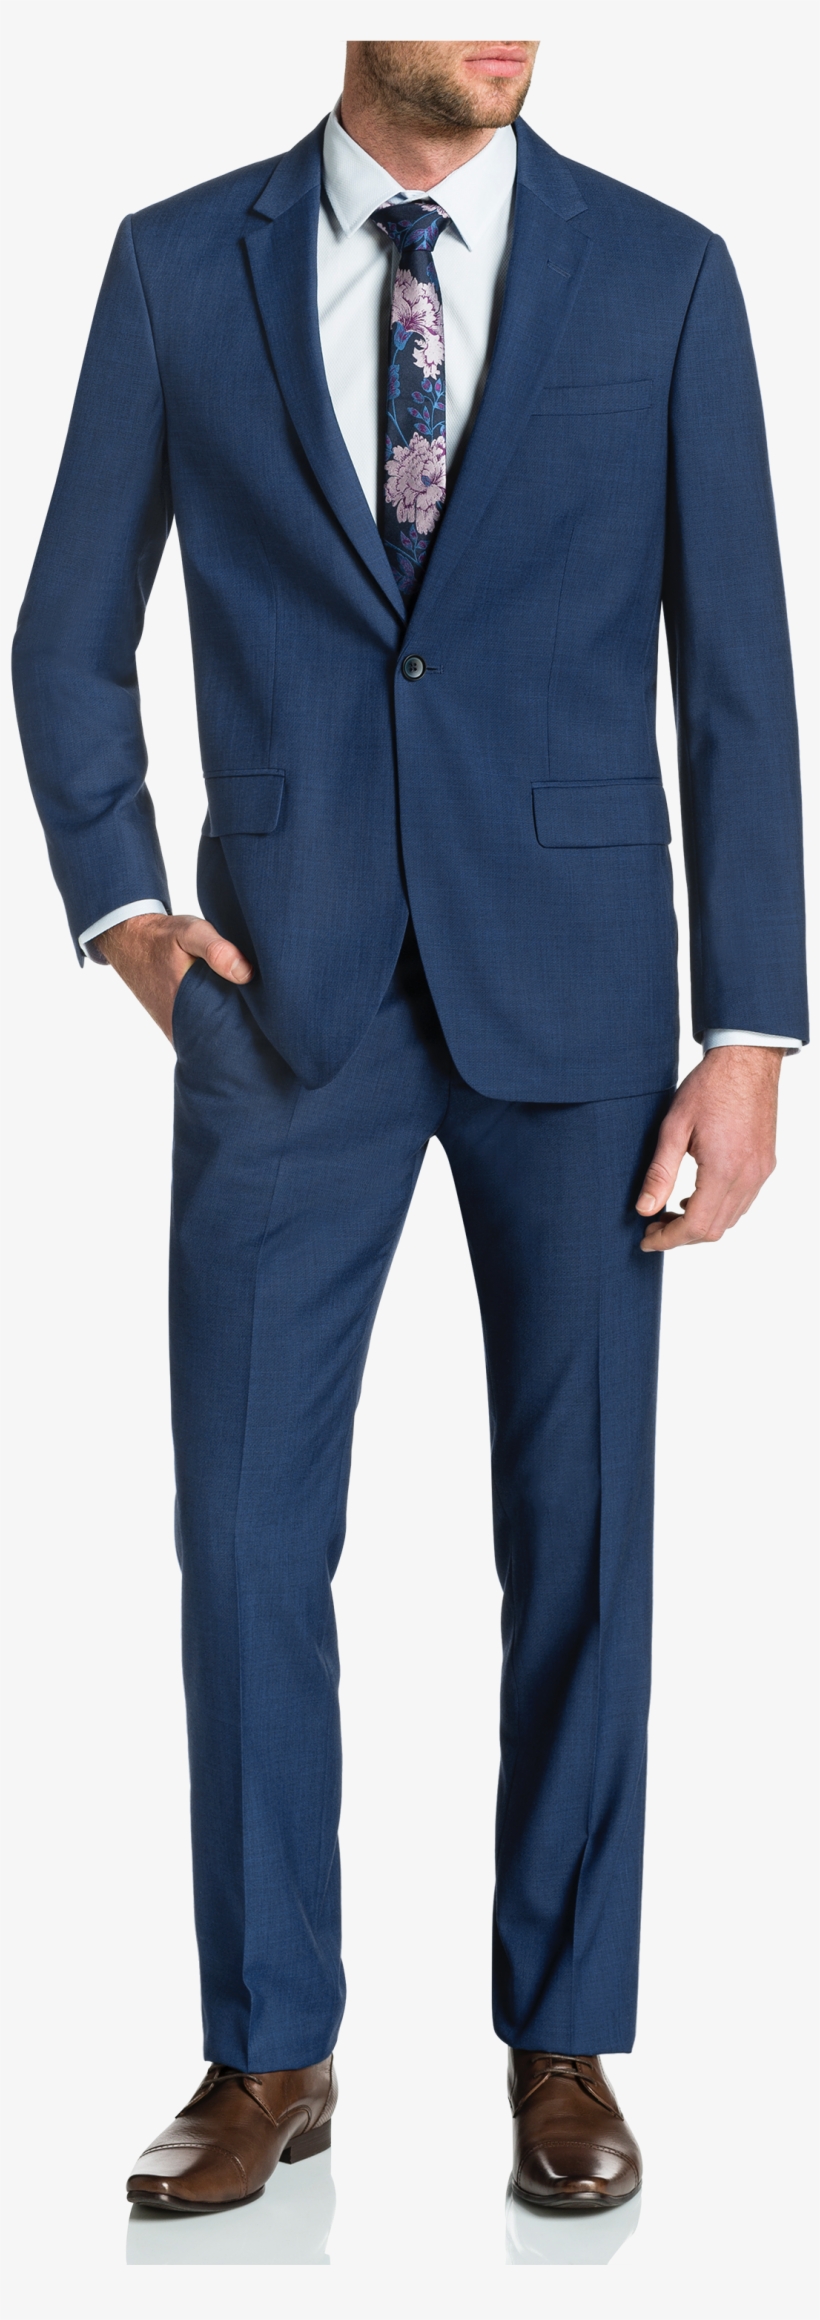 Blue Nixon 1 Button Suit - Calvin Klein Blazer Men Striped, transparent png #8589017